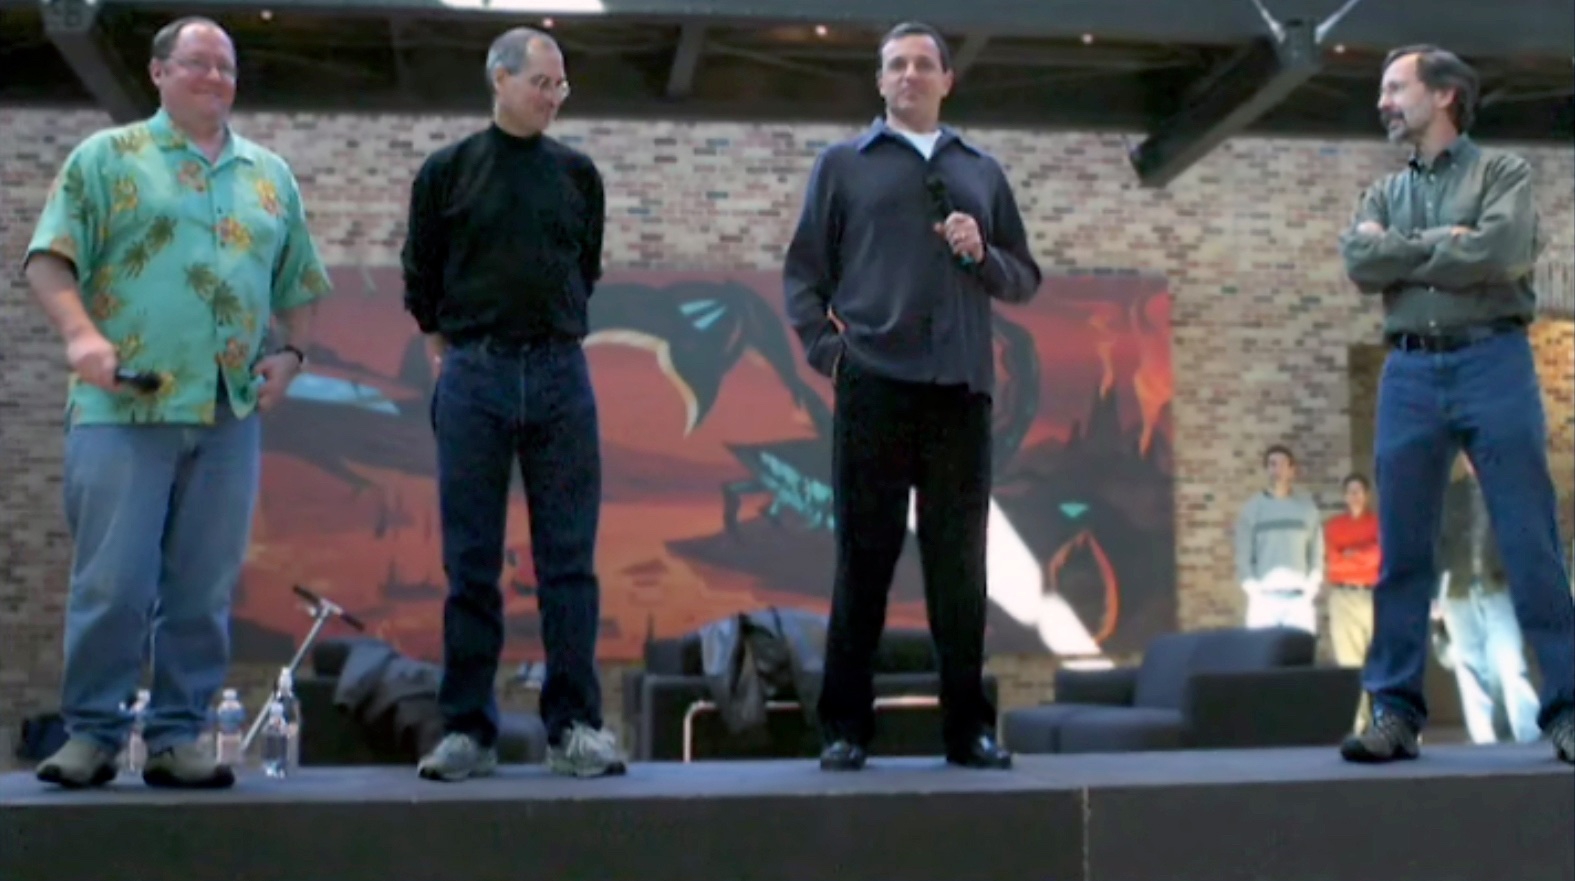 John Lasseter, Steve Jobs, Bob Iger and Ed Catmull announcing the Pixar-Disney merger at the Pixar campus, 24 Jan 2006